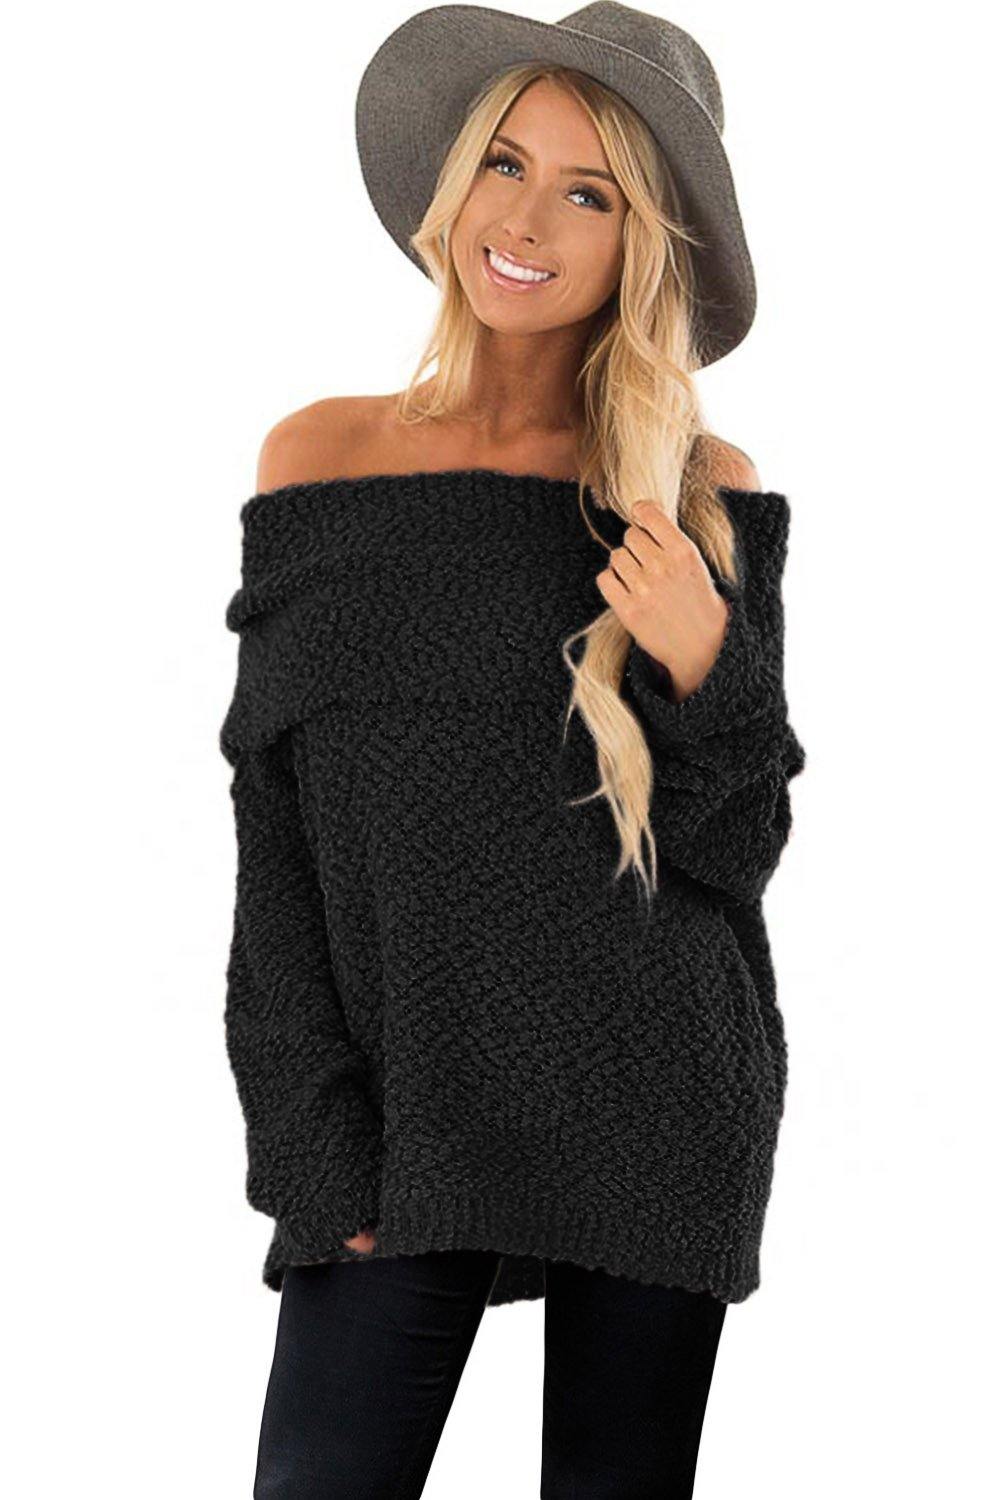 Off The Shoulder Comfy Sweater - L & M Kee, LLC